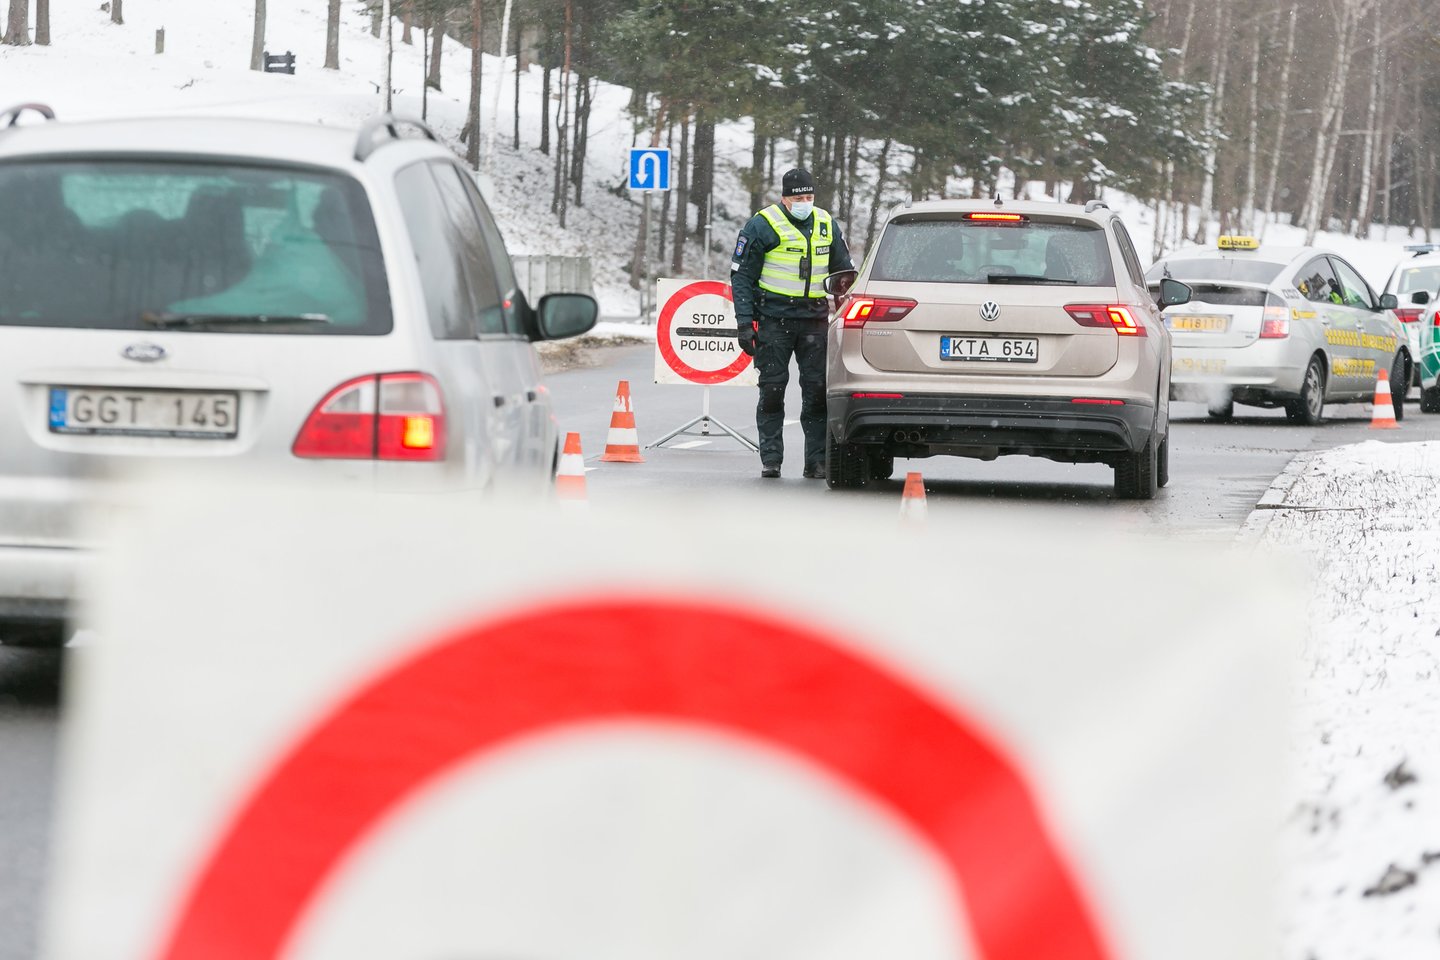  Vilniaus policijos tinkle per reidą šeštadienio rytą suspurdo 8 neblaivūs kelių ereliai. Iš viso buvo patikrinti kelli šimtai vairuotojų. <br> T.Bauro nuotr.